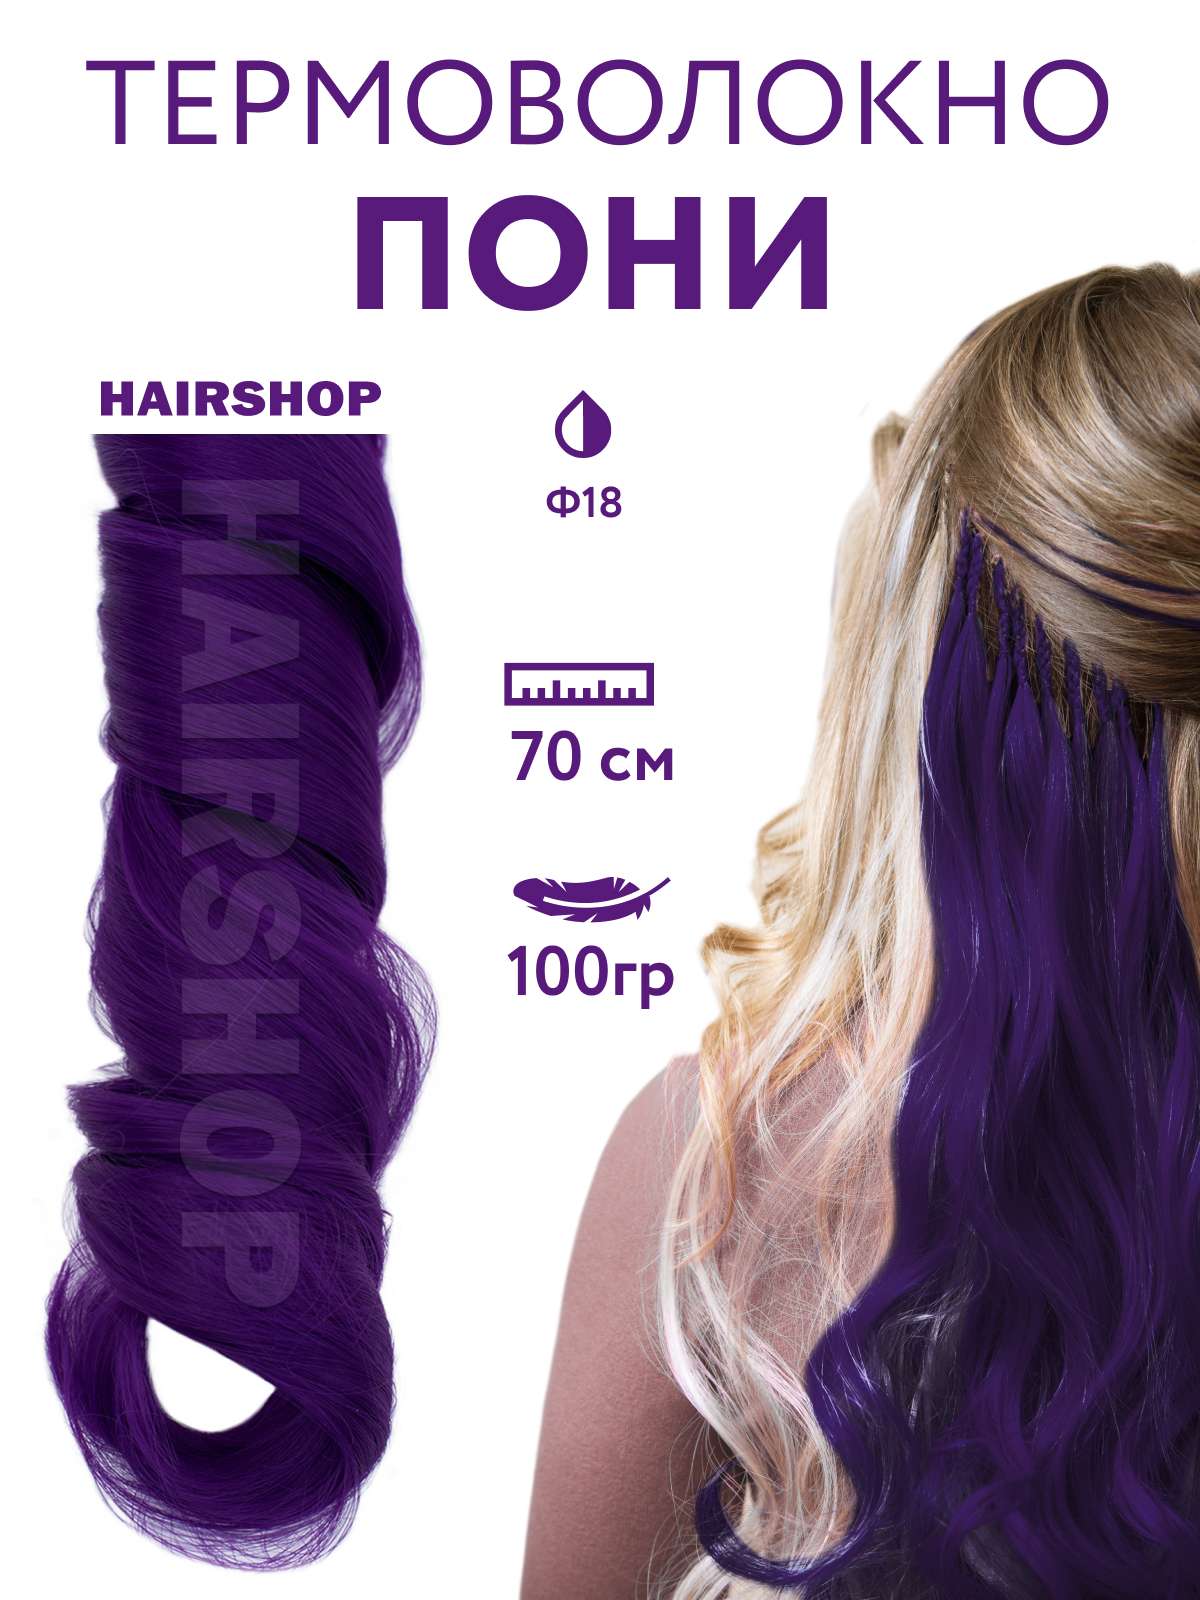 Канекалон HAIRSHOP Пони HairUp для точечного афронаращивания Ф18 Темно-фиолетовый 1,4м канекалон hairshop пони hairup для точечного афронаращивания осенний листопад 1 4м